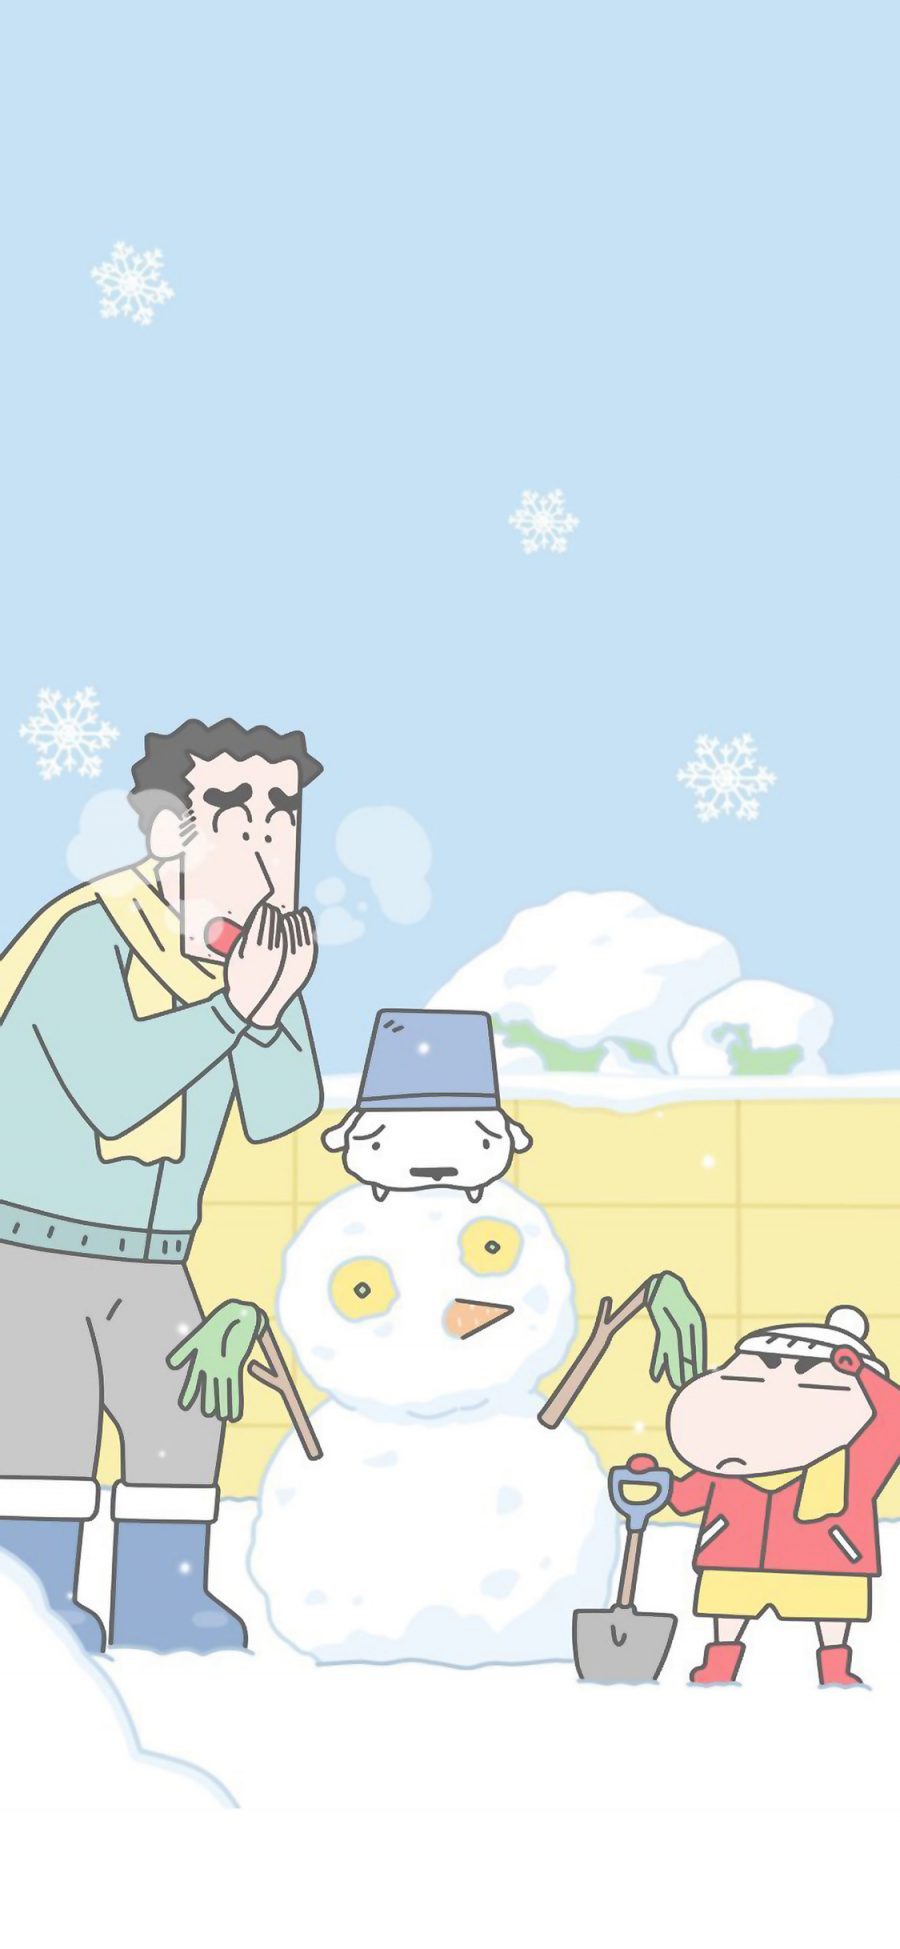 [2436×1125]蜡笔小新 堆雪人 冬天 爸爸 日本 动画 苹果手机动漫壁纸图片